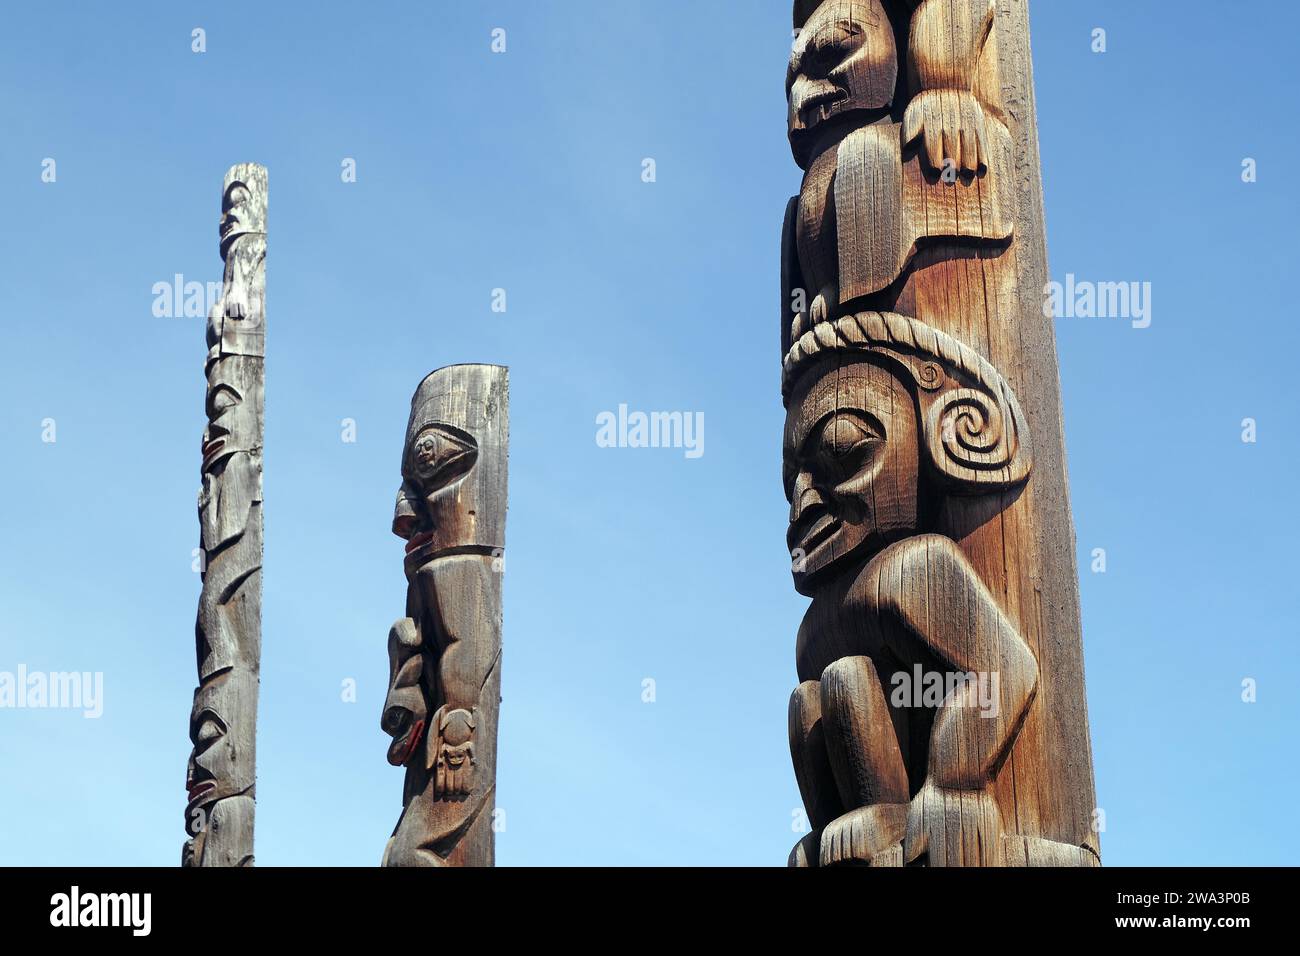 Totems géants en bois, visages, art des peuples autochtones du Canada, Stewart Cassiar Highway, Colombie-Britannique, Canada, Amérique du Nord Banque D'Images